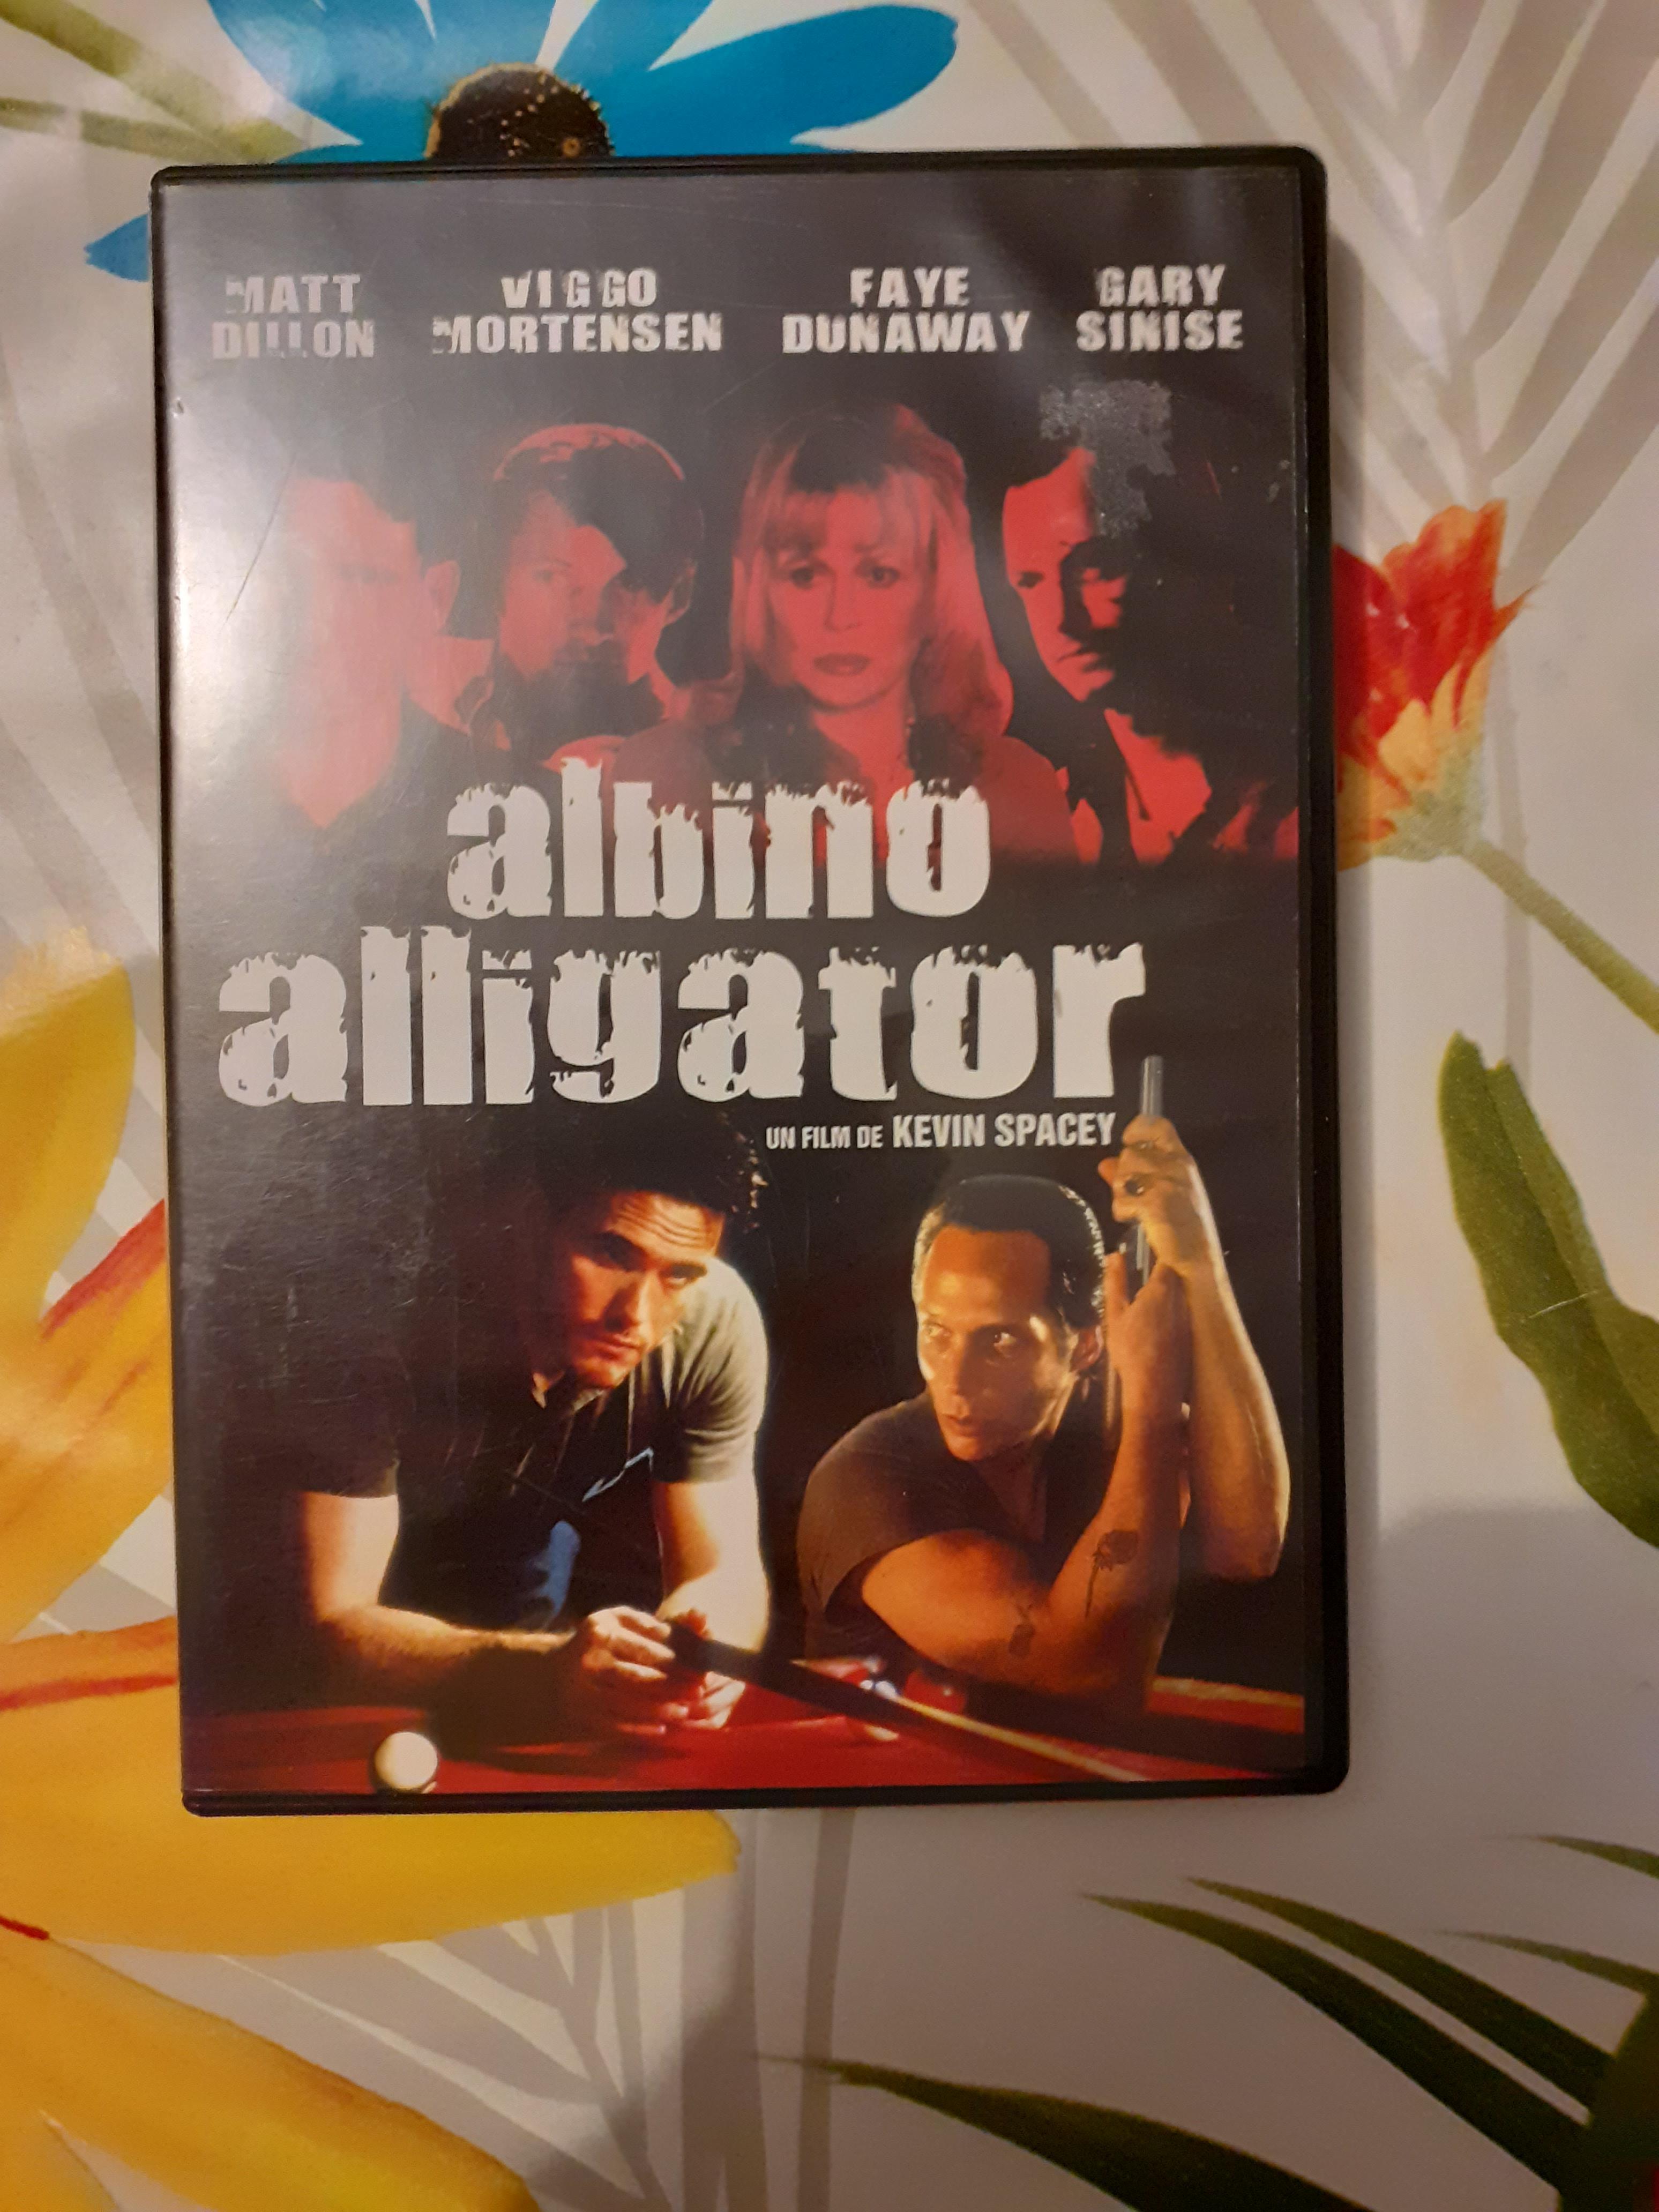 troc de troc dvd albino alligator image 0